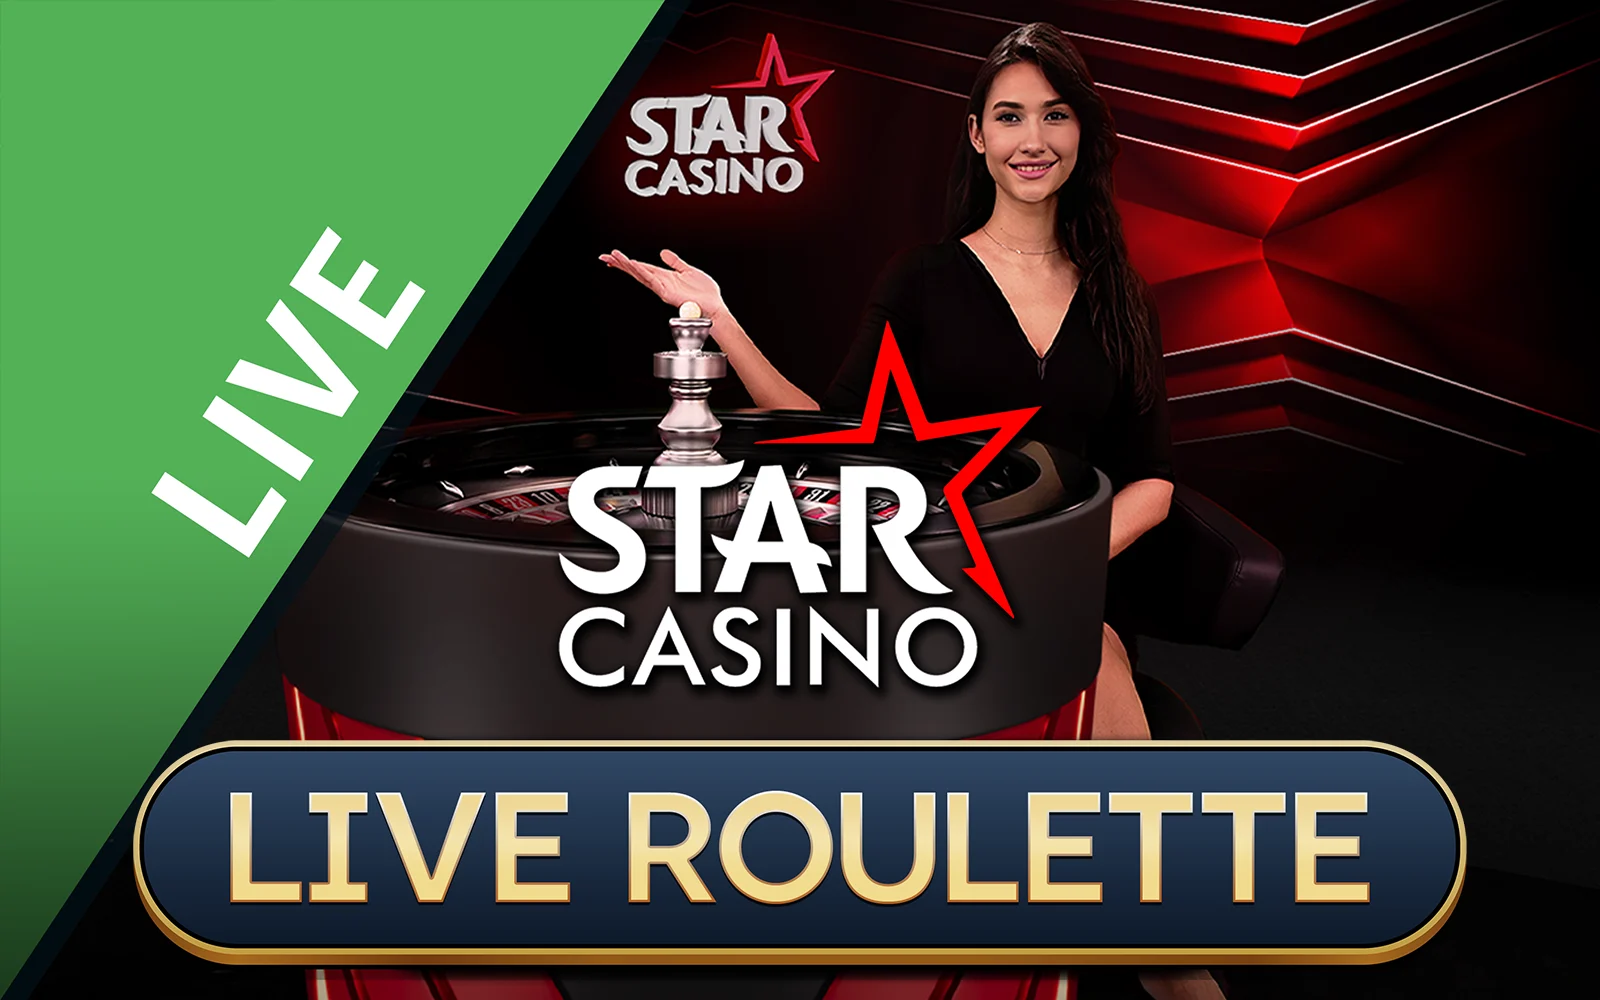 Play Starcasino Roulette on Starcasino.be online casino